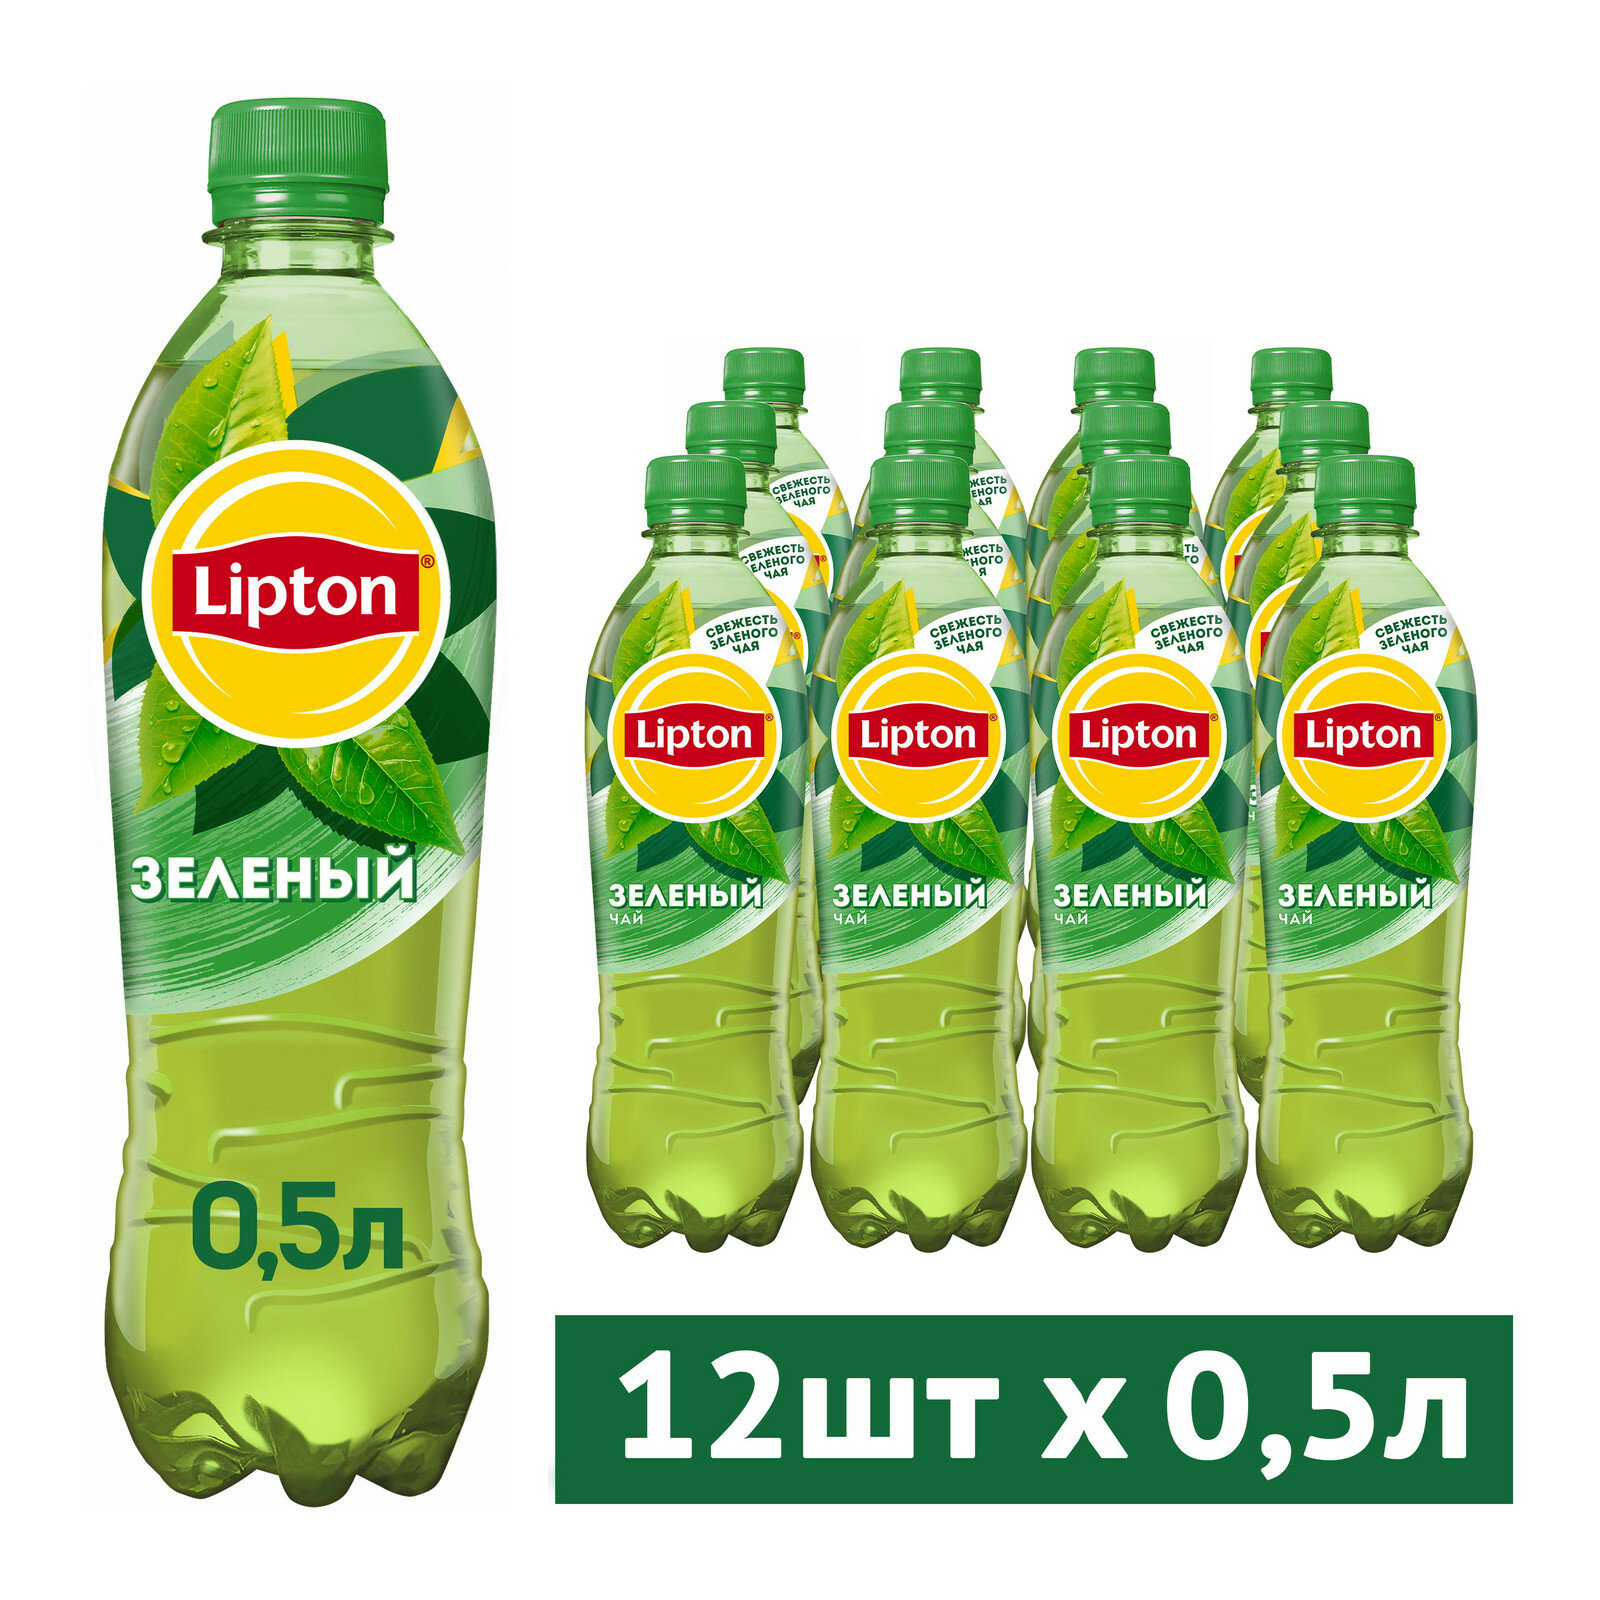 Чай Lipton зеленый, Липтон чай 0.5 л. 12 штук в упаковке